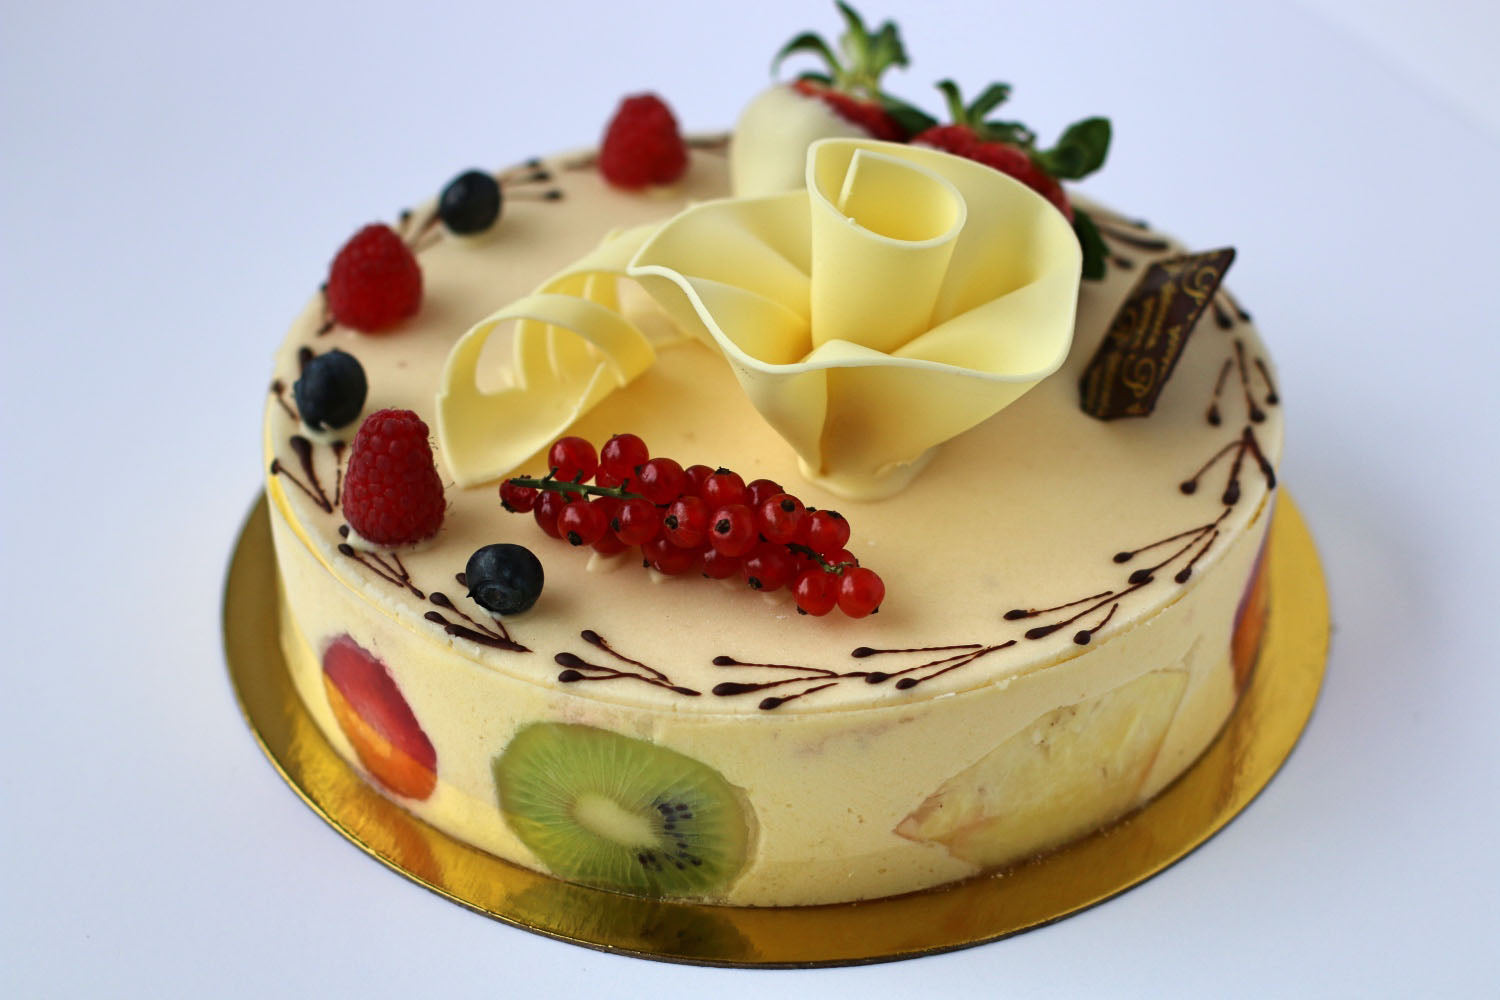 10 Most Popular Spanish Cakes - TasteAtlas